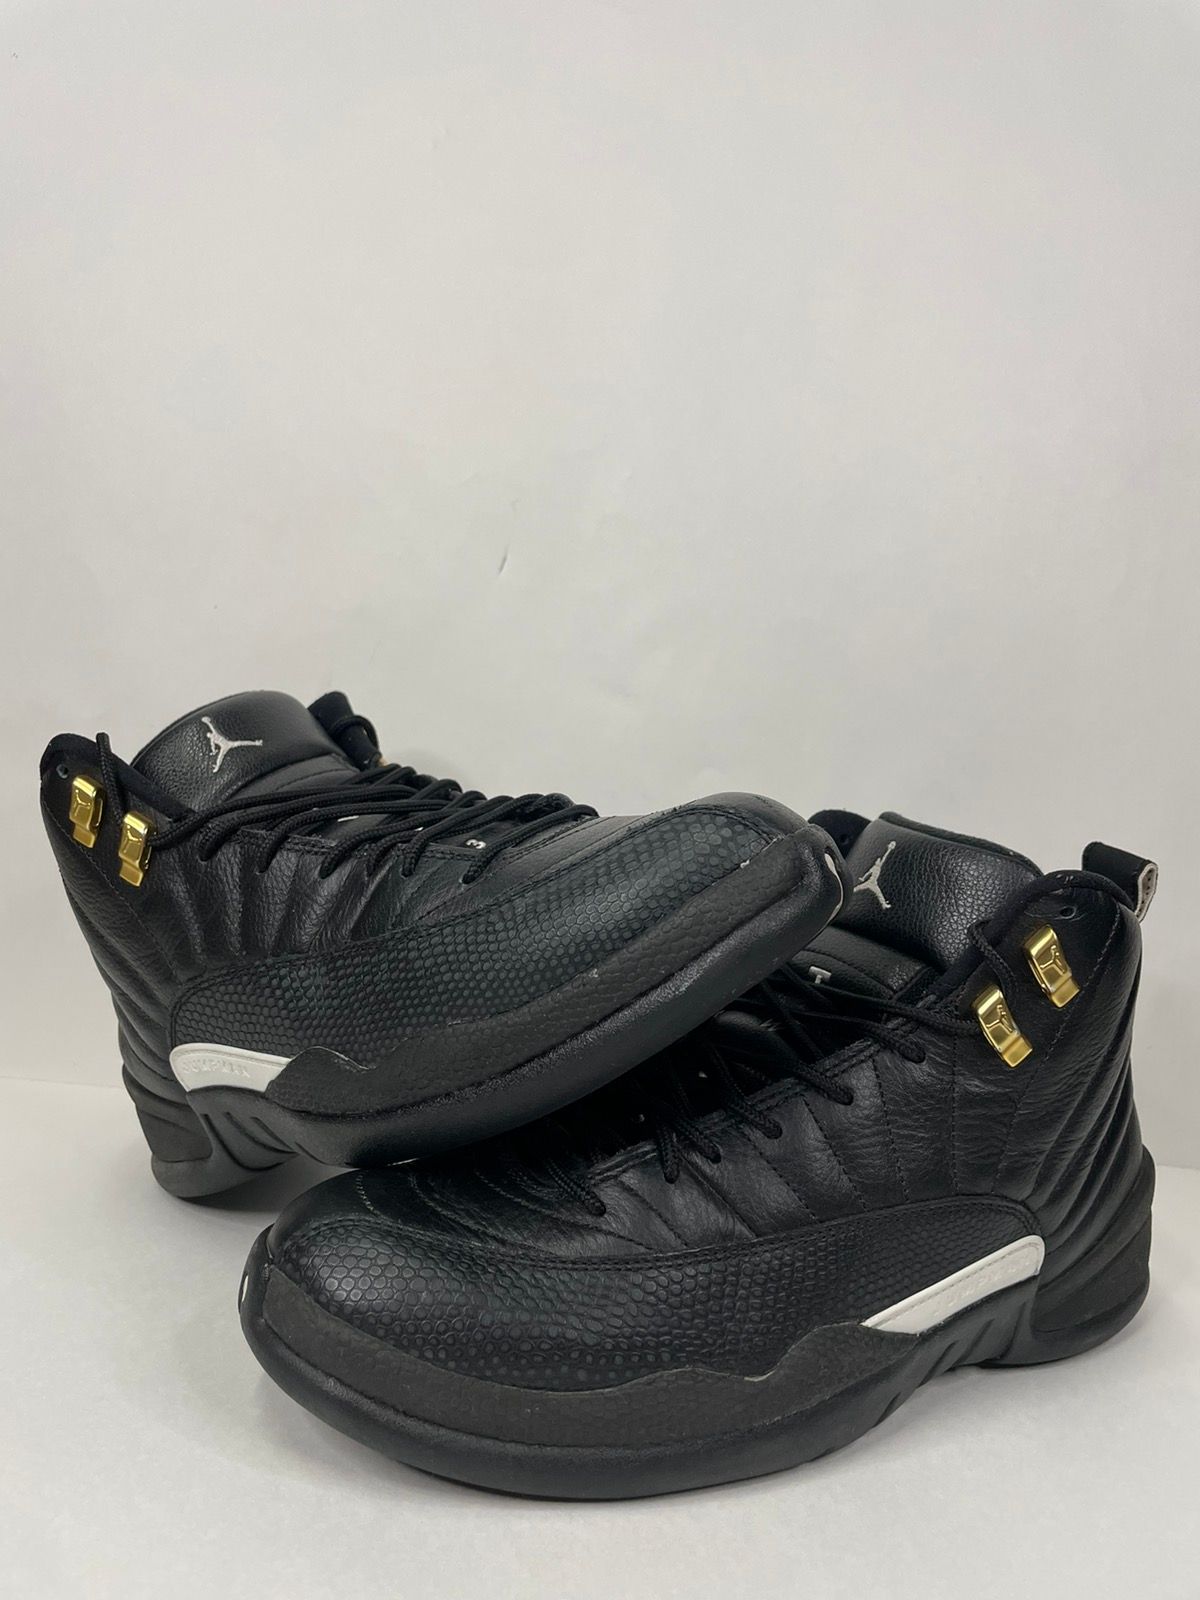 Pre-owned Jordan Brand Air Jordan 12 Retro The Master Shoes In Black